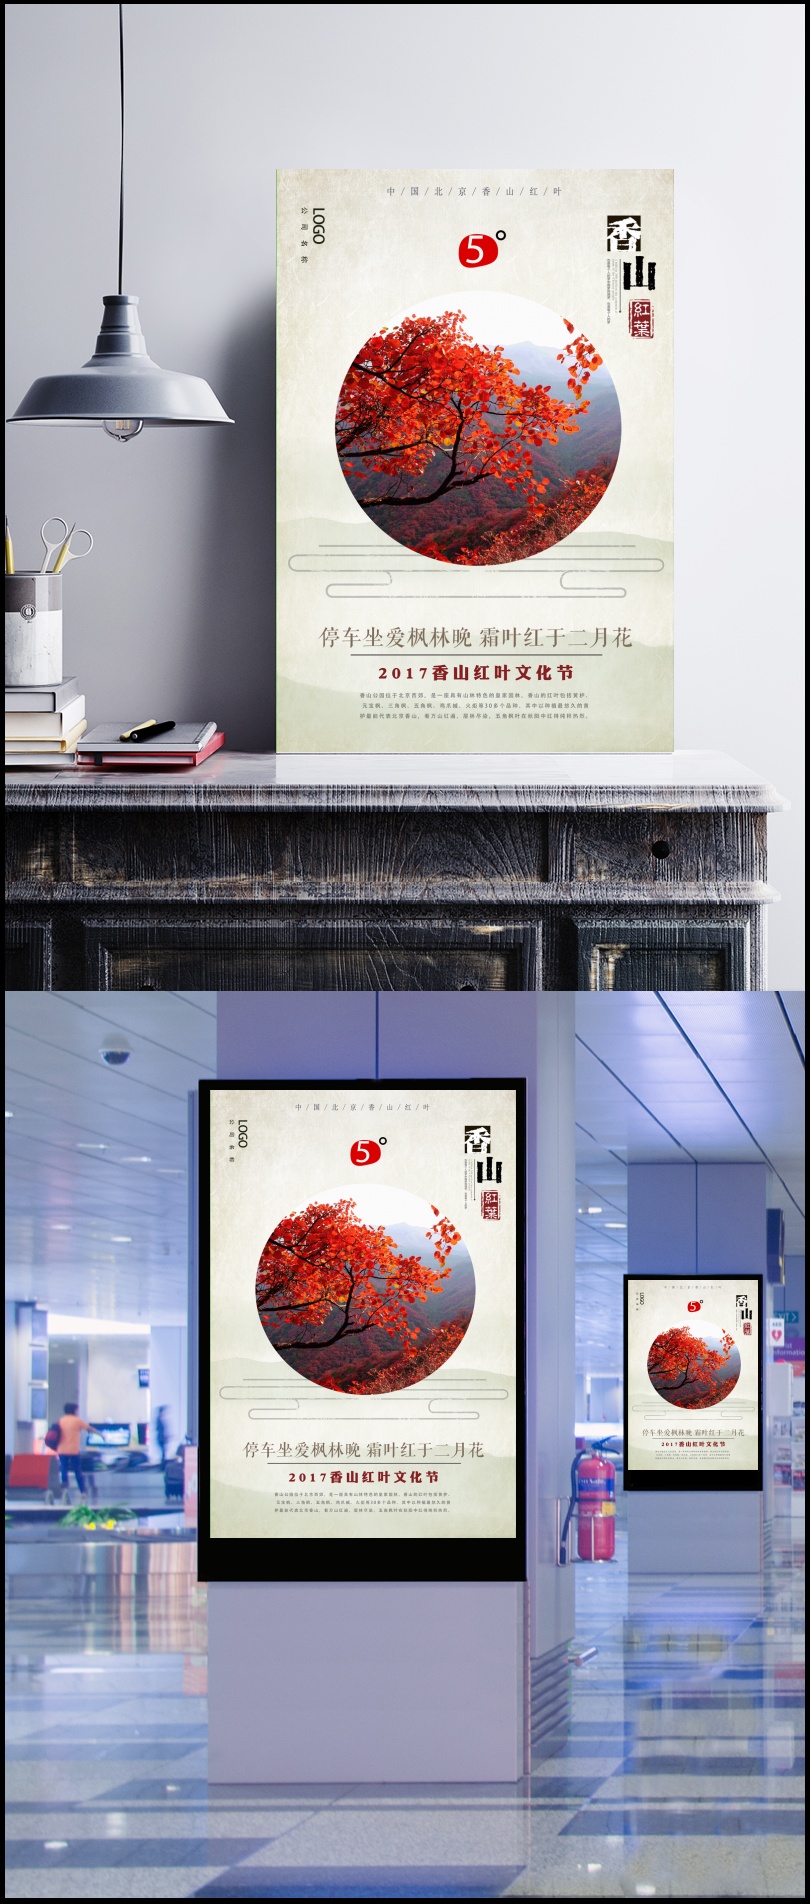 北京香山红叶秋季旅游海报